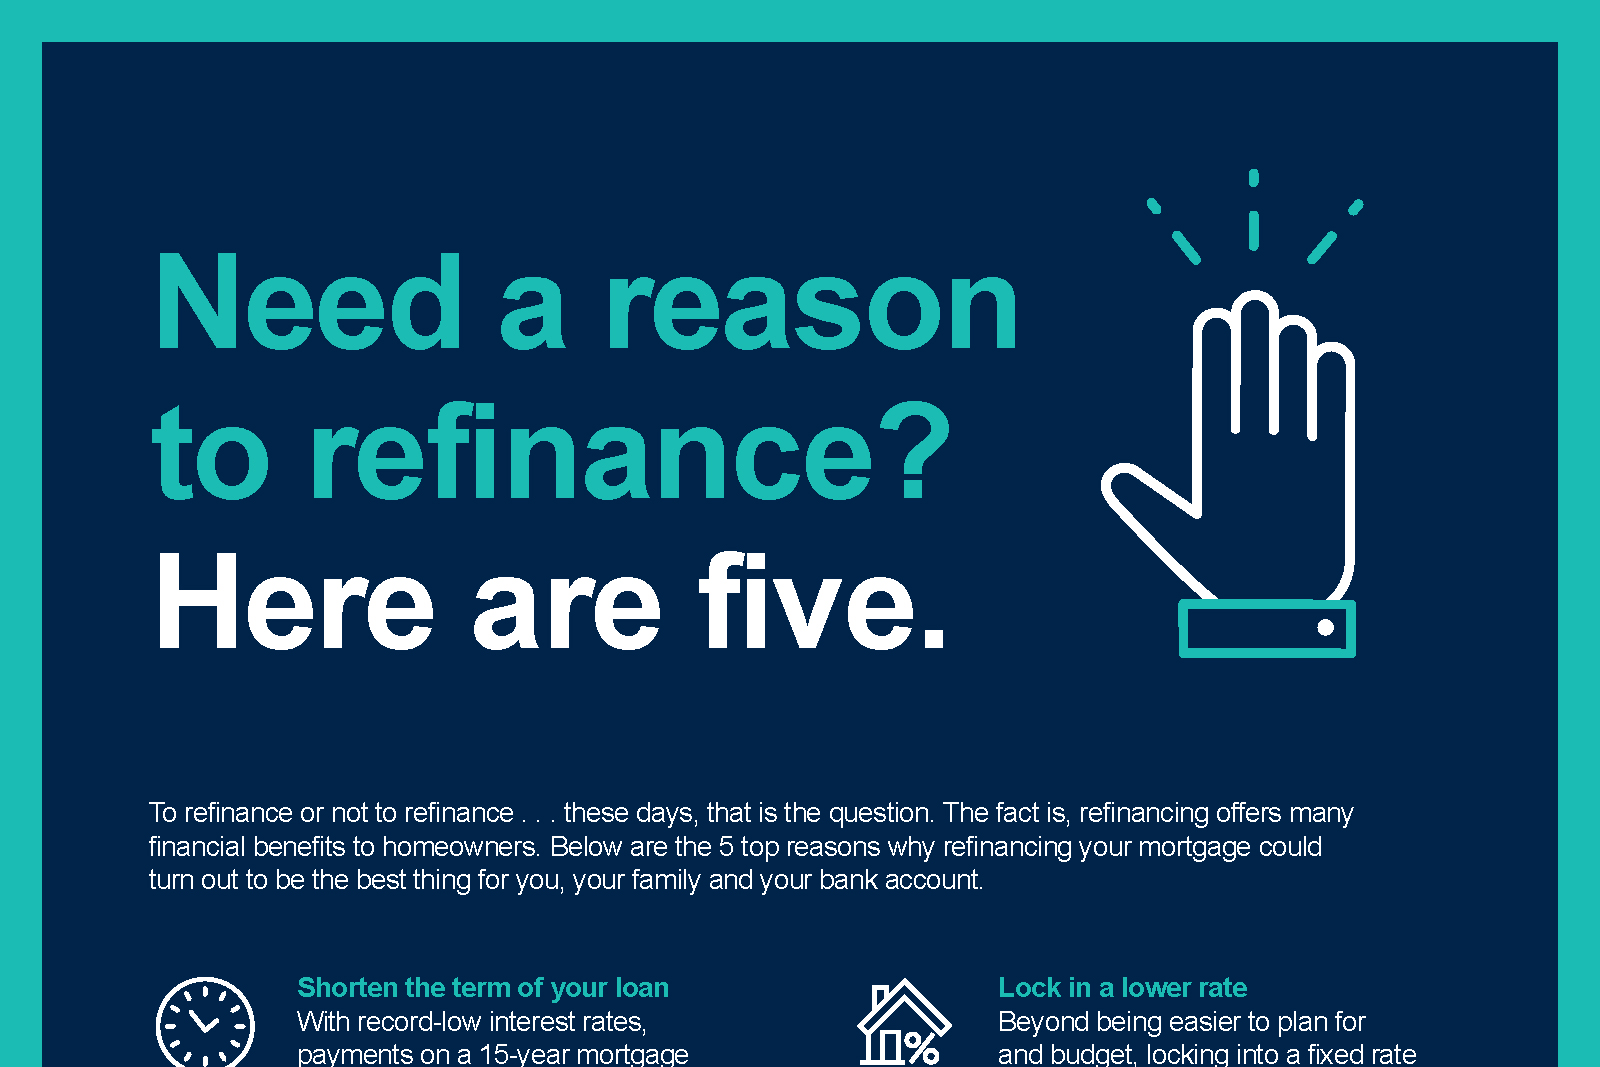 Benefits of refinancing